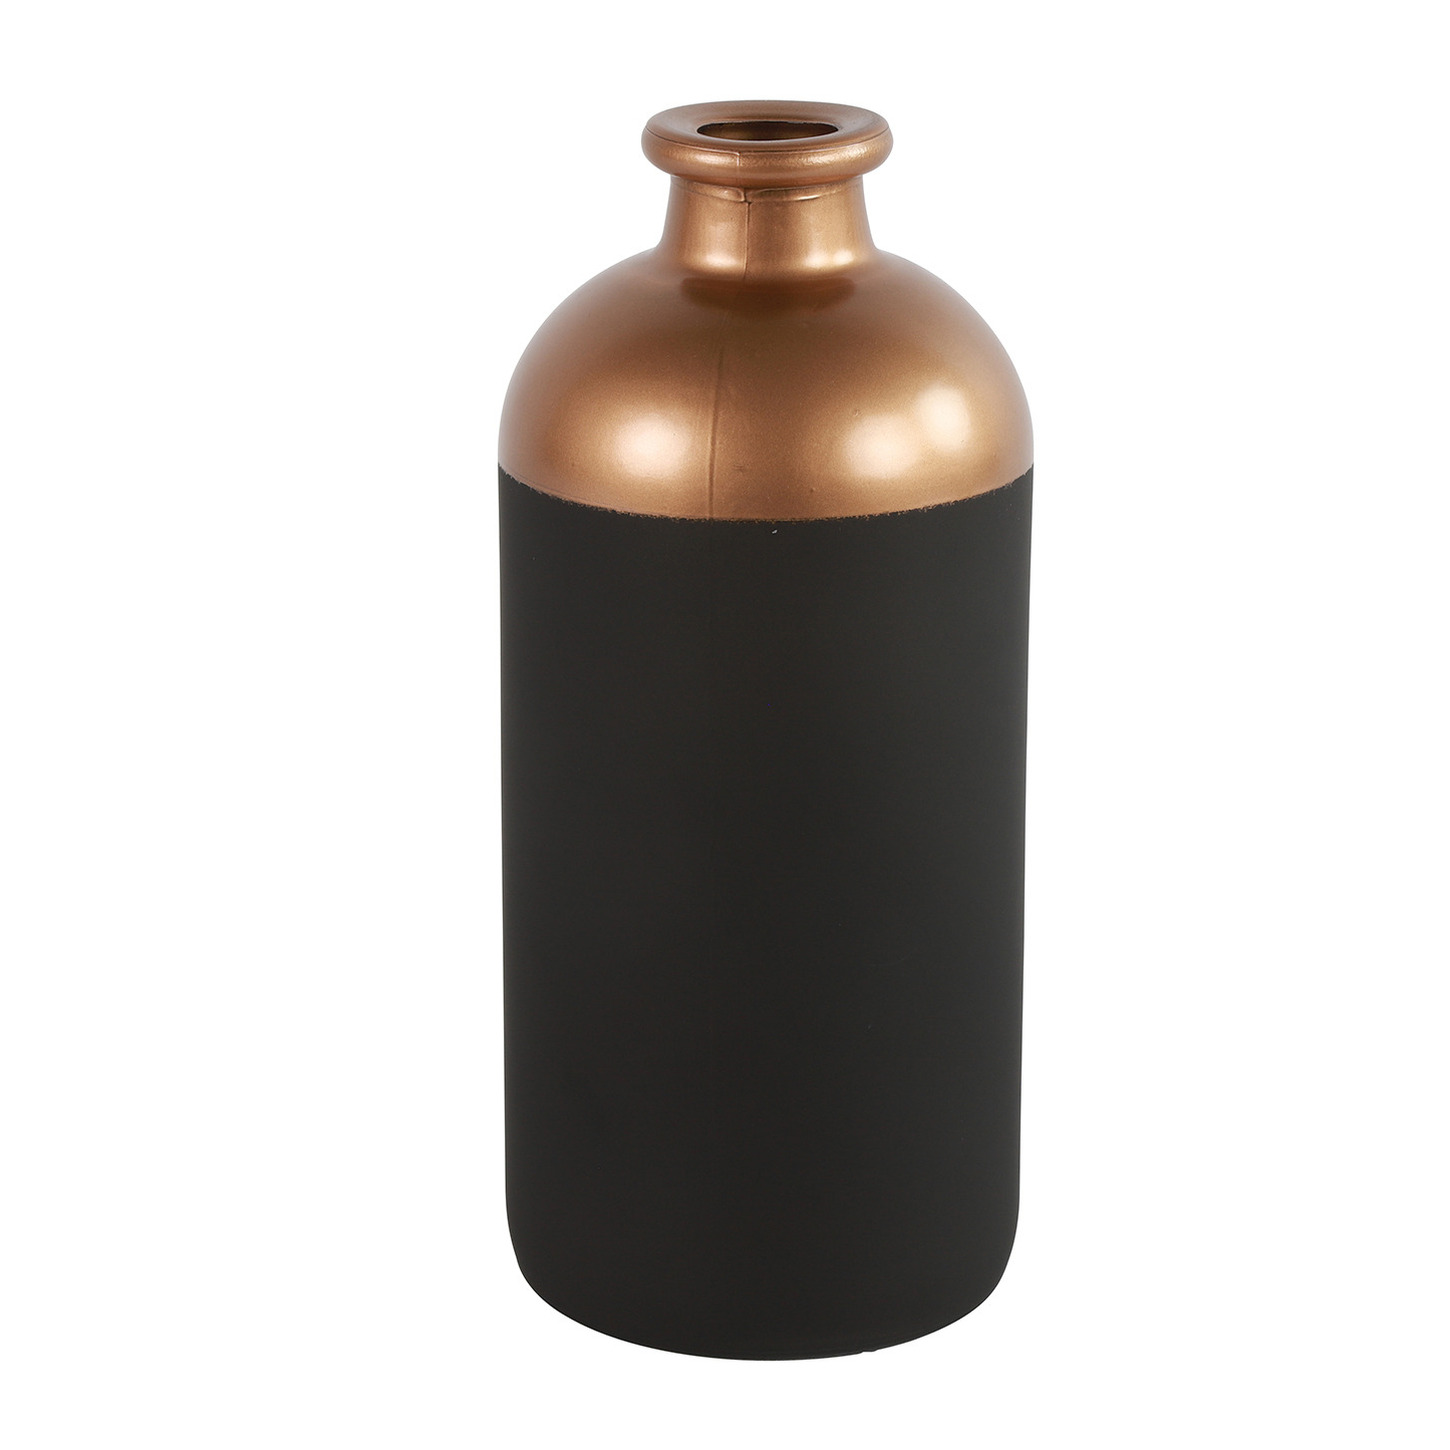 Countryfield Bloemen of deco vaas zwart-koper glas luxe fles vorm D11 x H25 cm